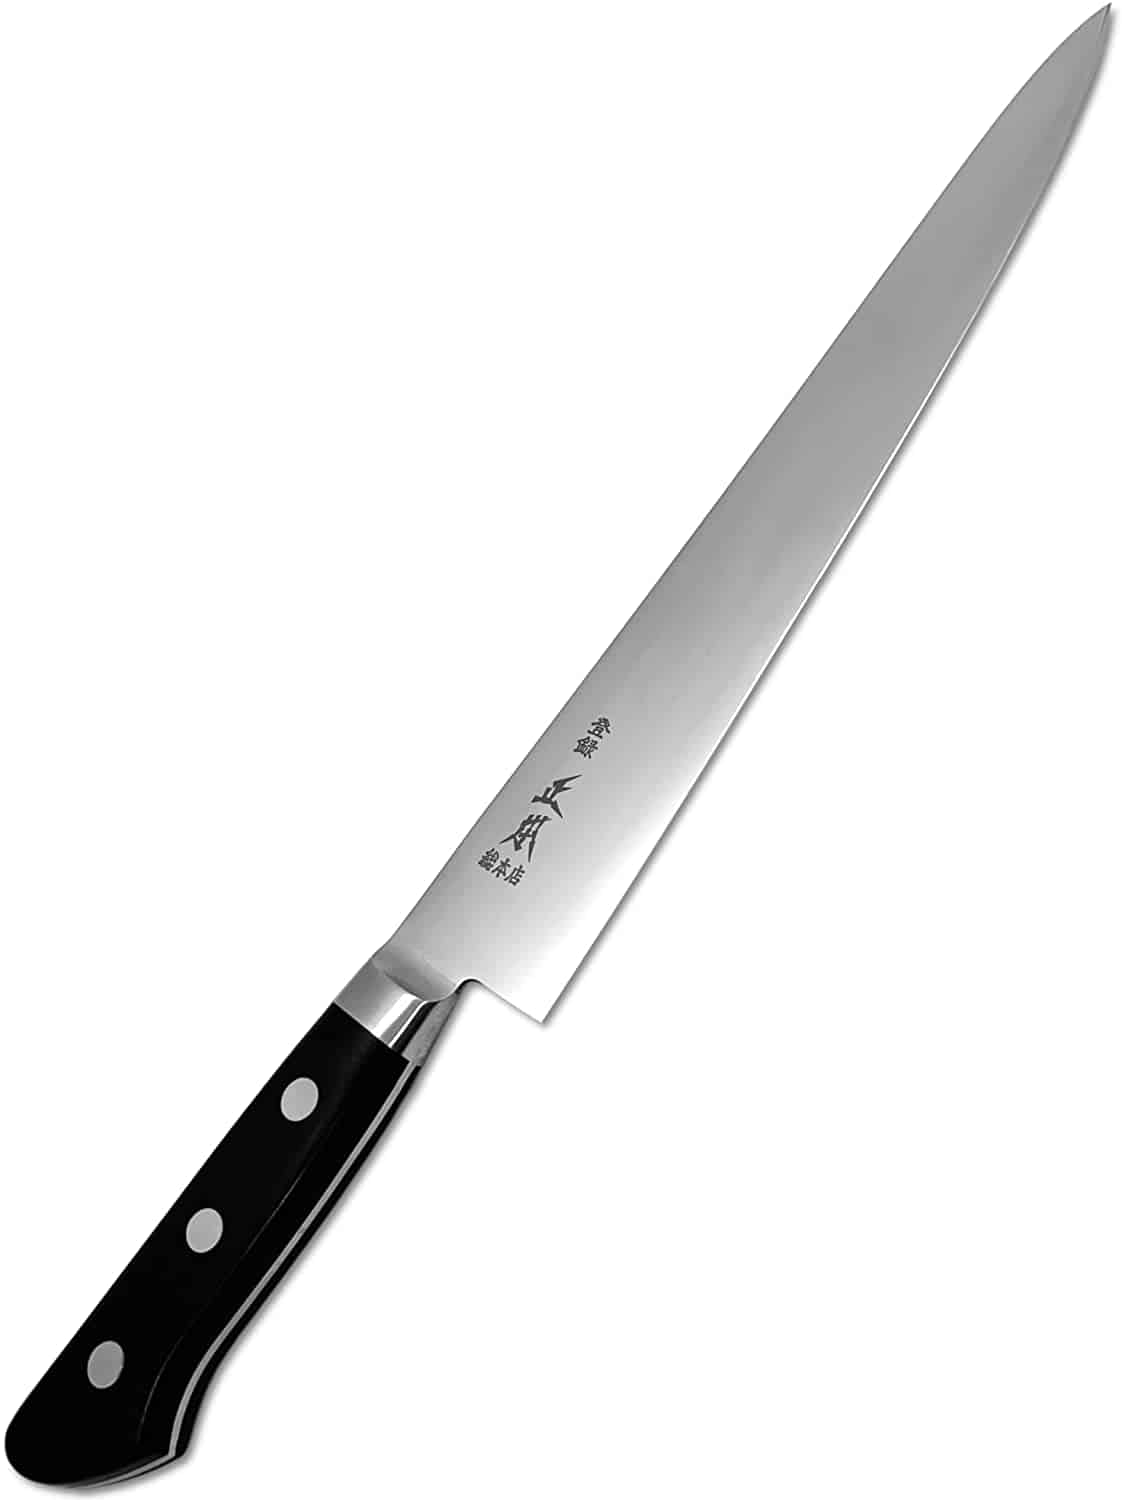 最高のスジヒキスライサーナイフ-MASAMOTOATスライシングナイフ10.5インチ